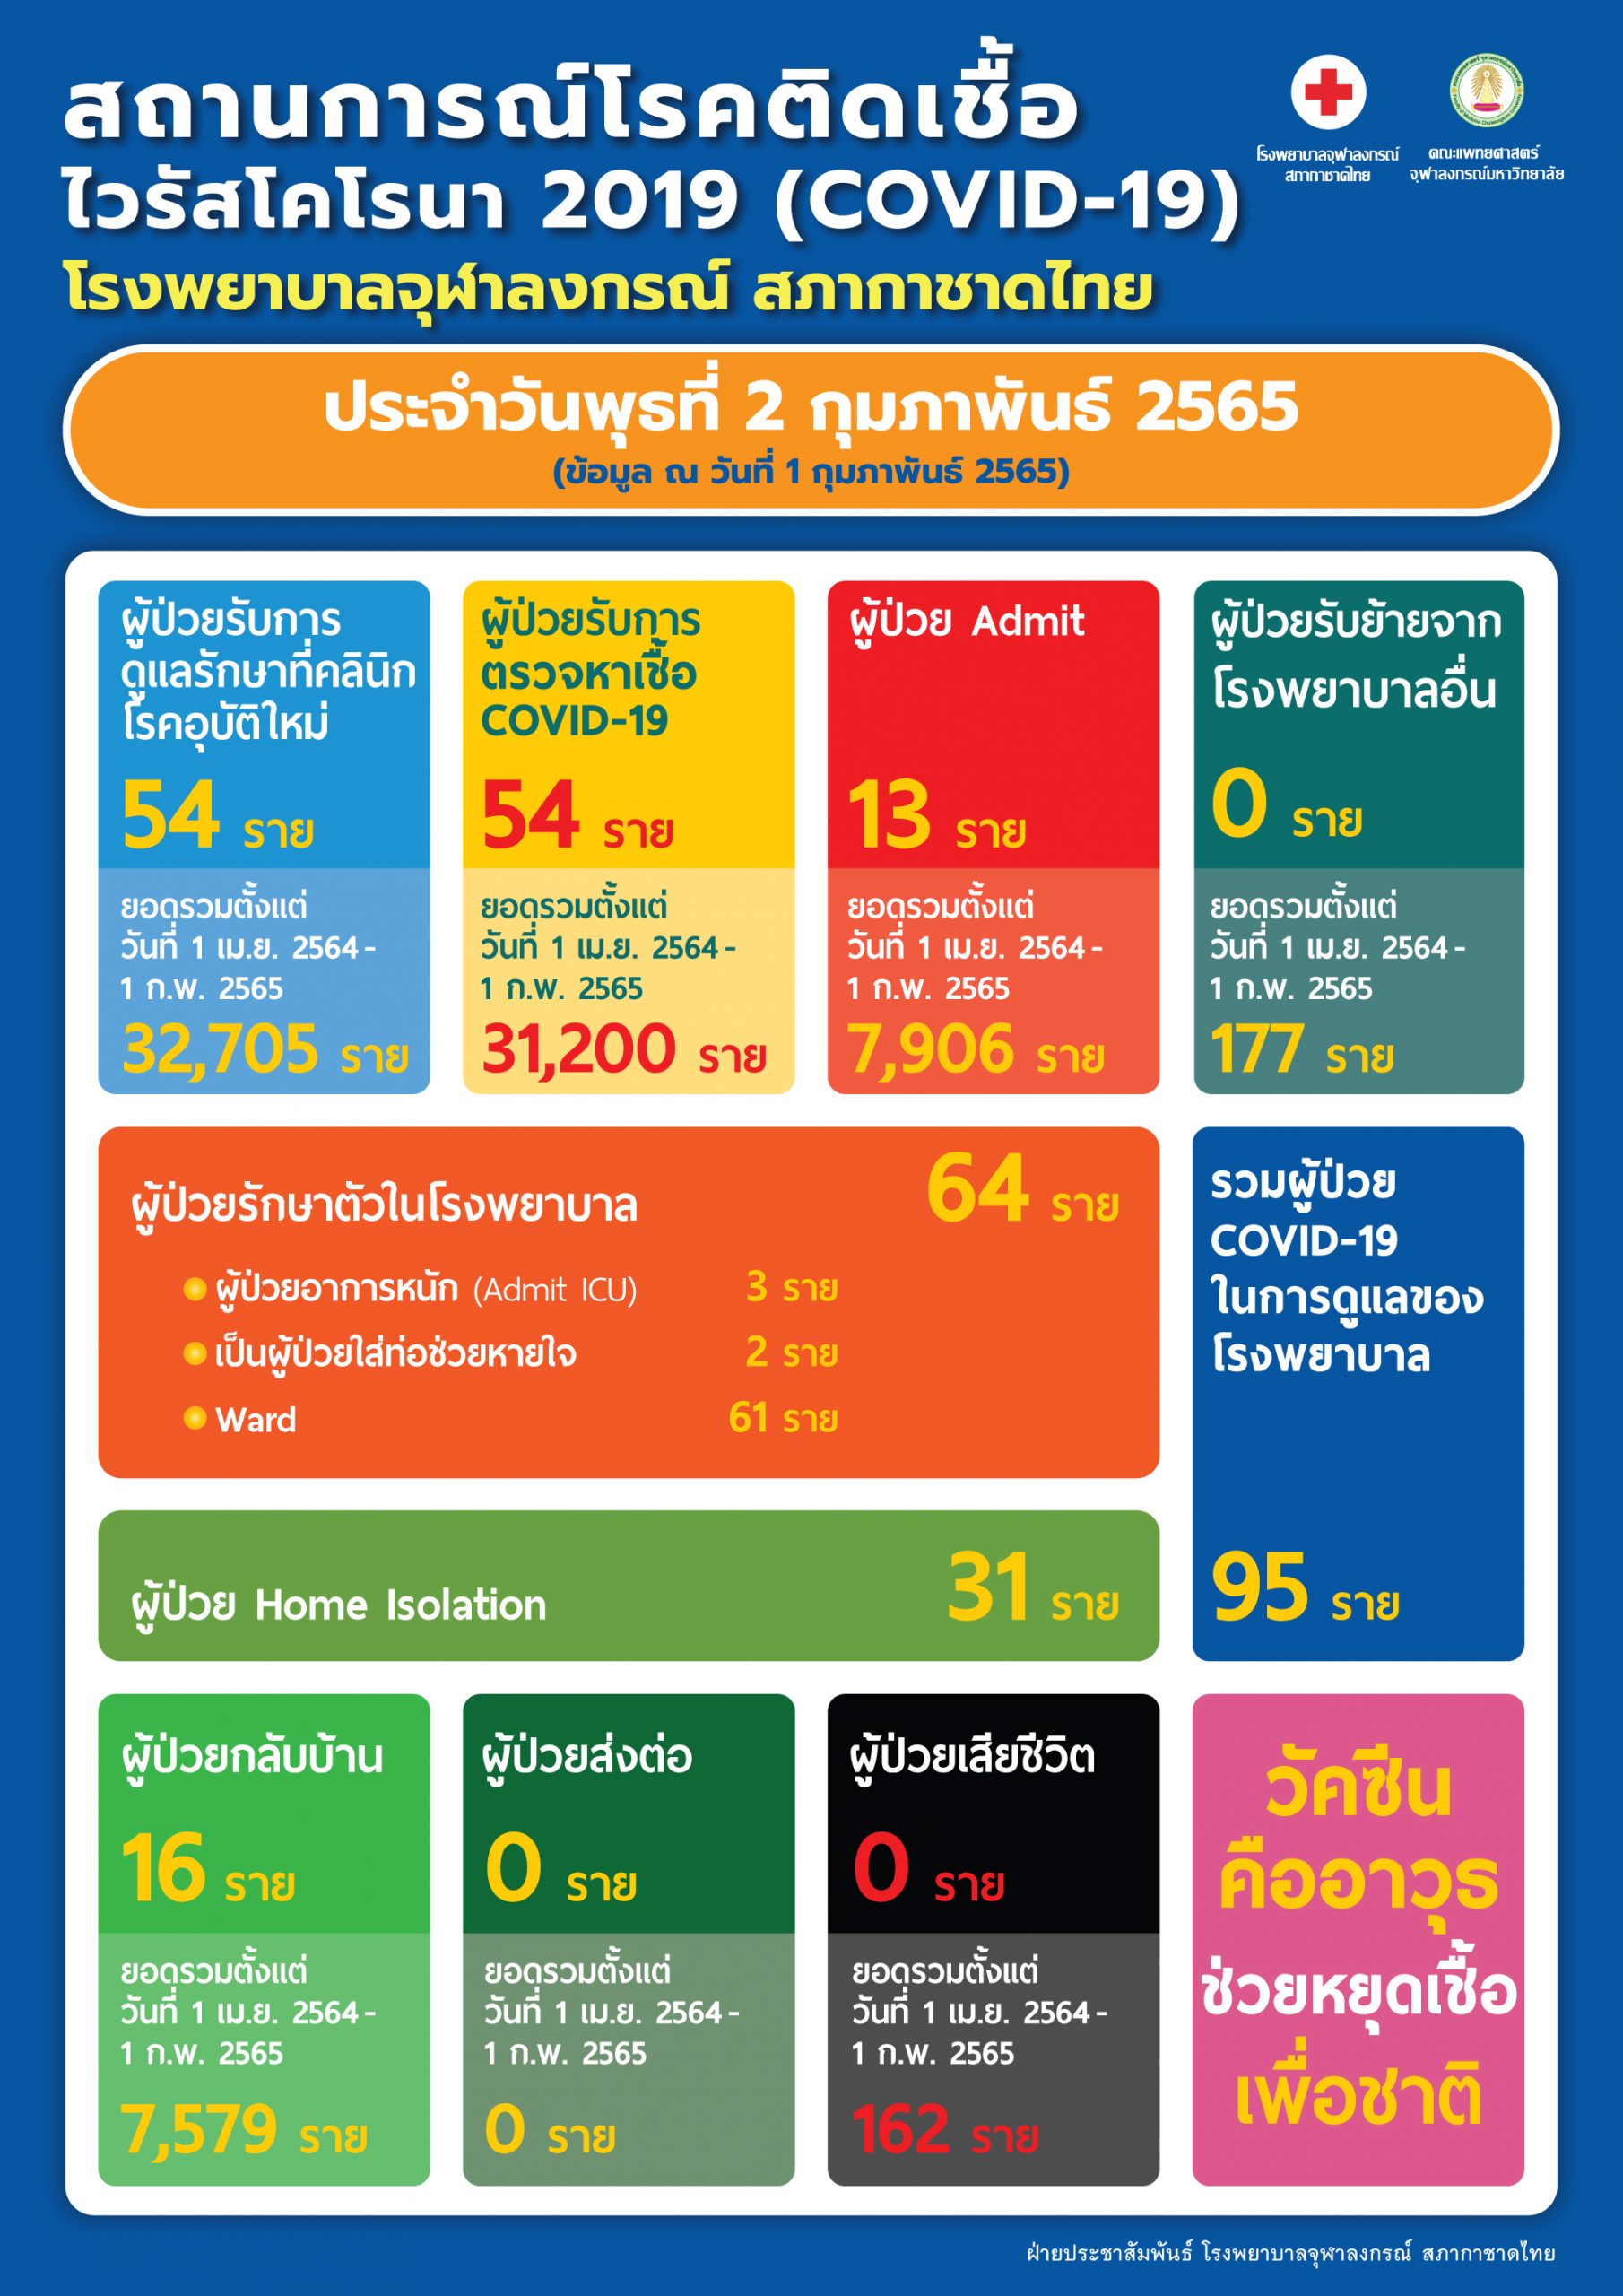 สถานการณ์โรคติดเชื้อไวรัสโคโรนา 2019 (COVID-19) โรงพยาบาลจุฬาลงกรณ์ สภากาชาดไทย ประจำวันพุธที่ 2 กุมภาพันธ์ 2565